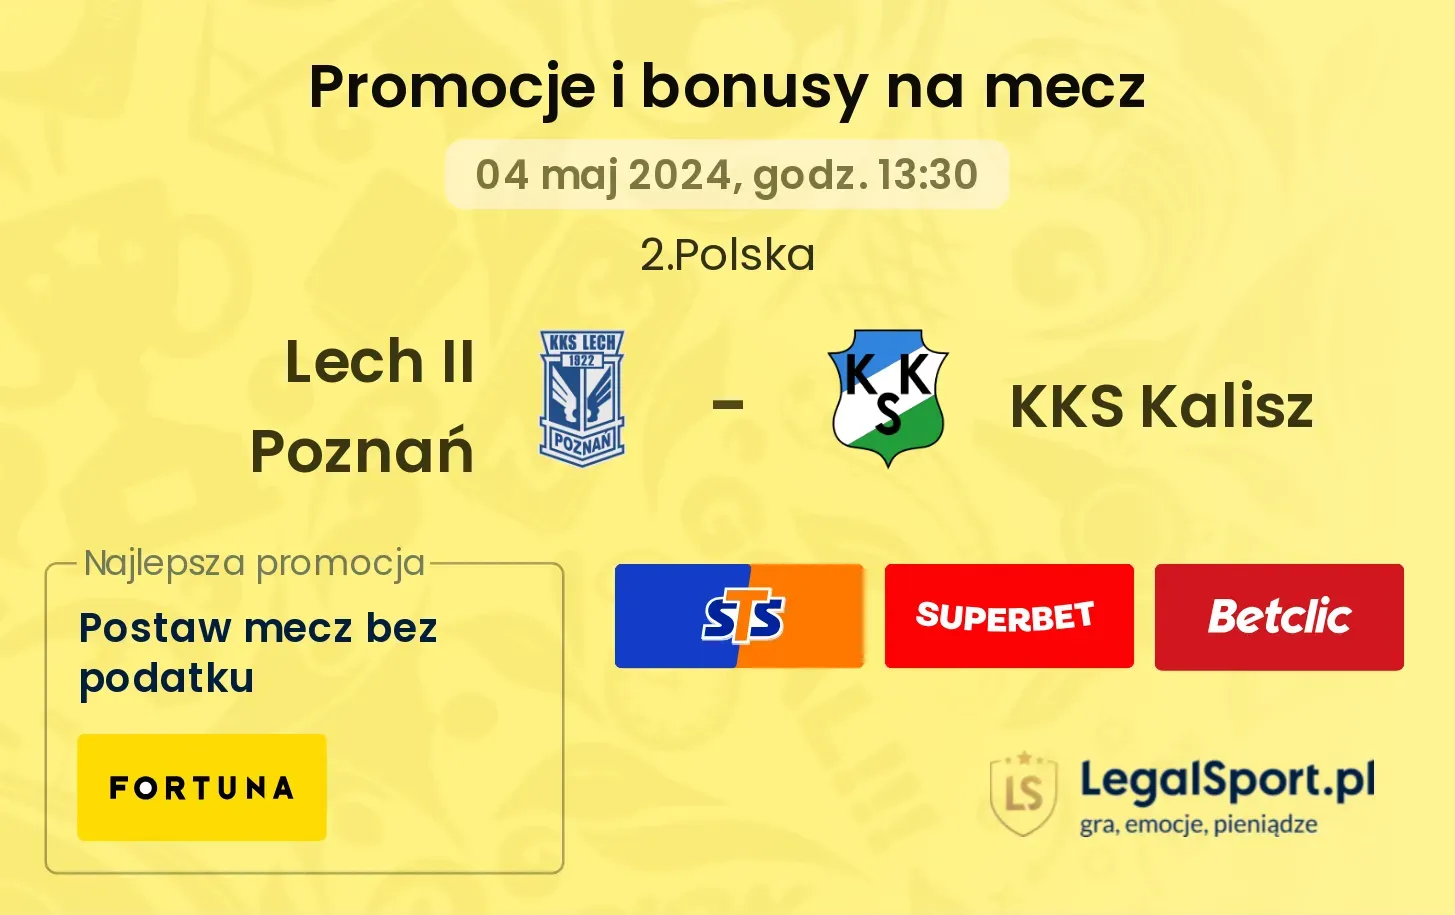 Lech II Poznań - KKS Kalisz promocje bonusy na mecz